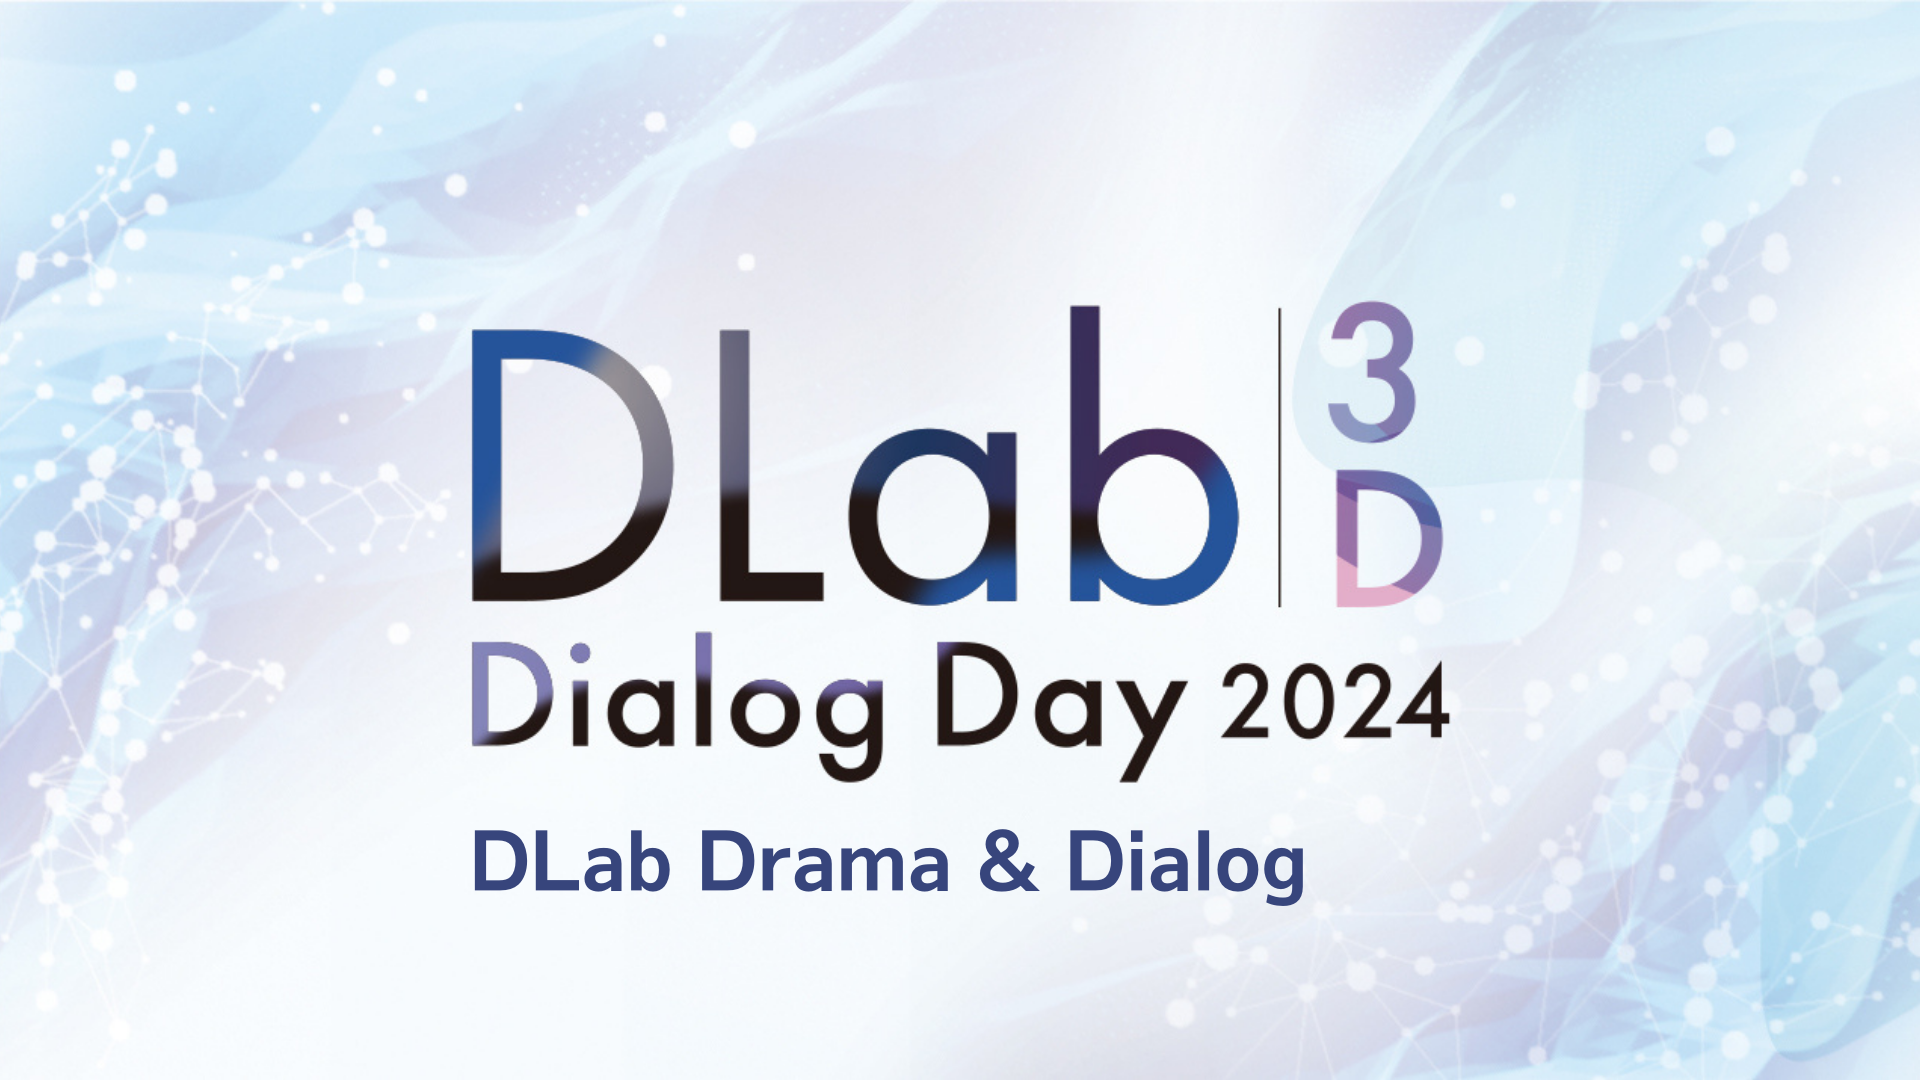 社会と共に未来を考えるイベント「DLab Dialog Day 2024」を開催